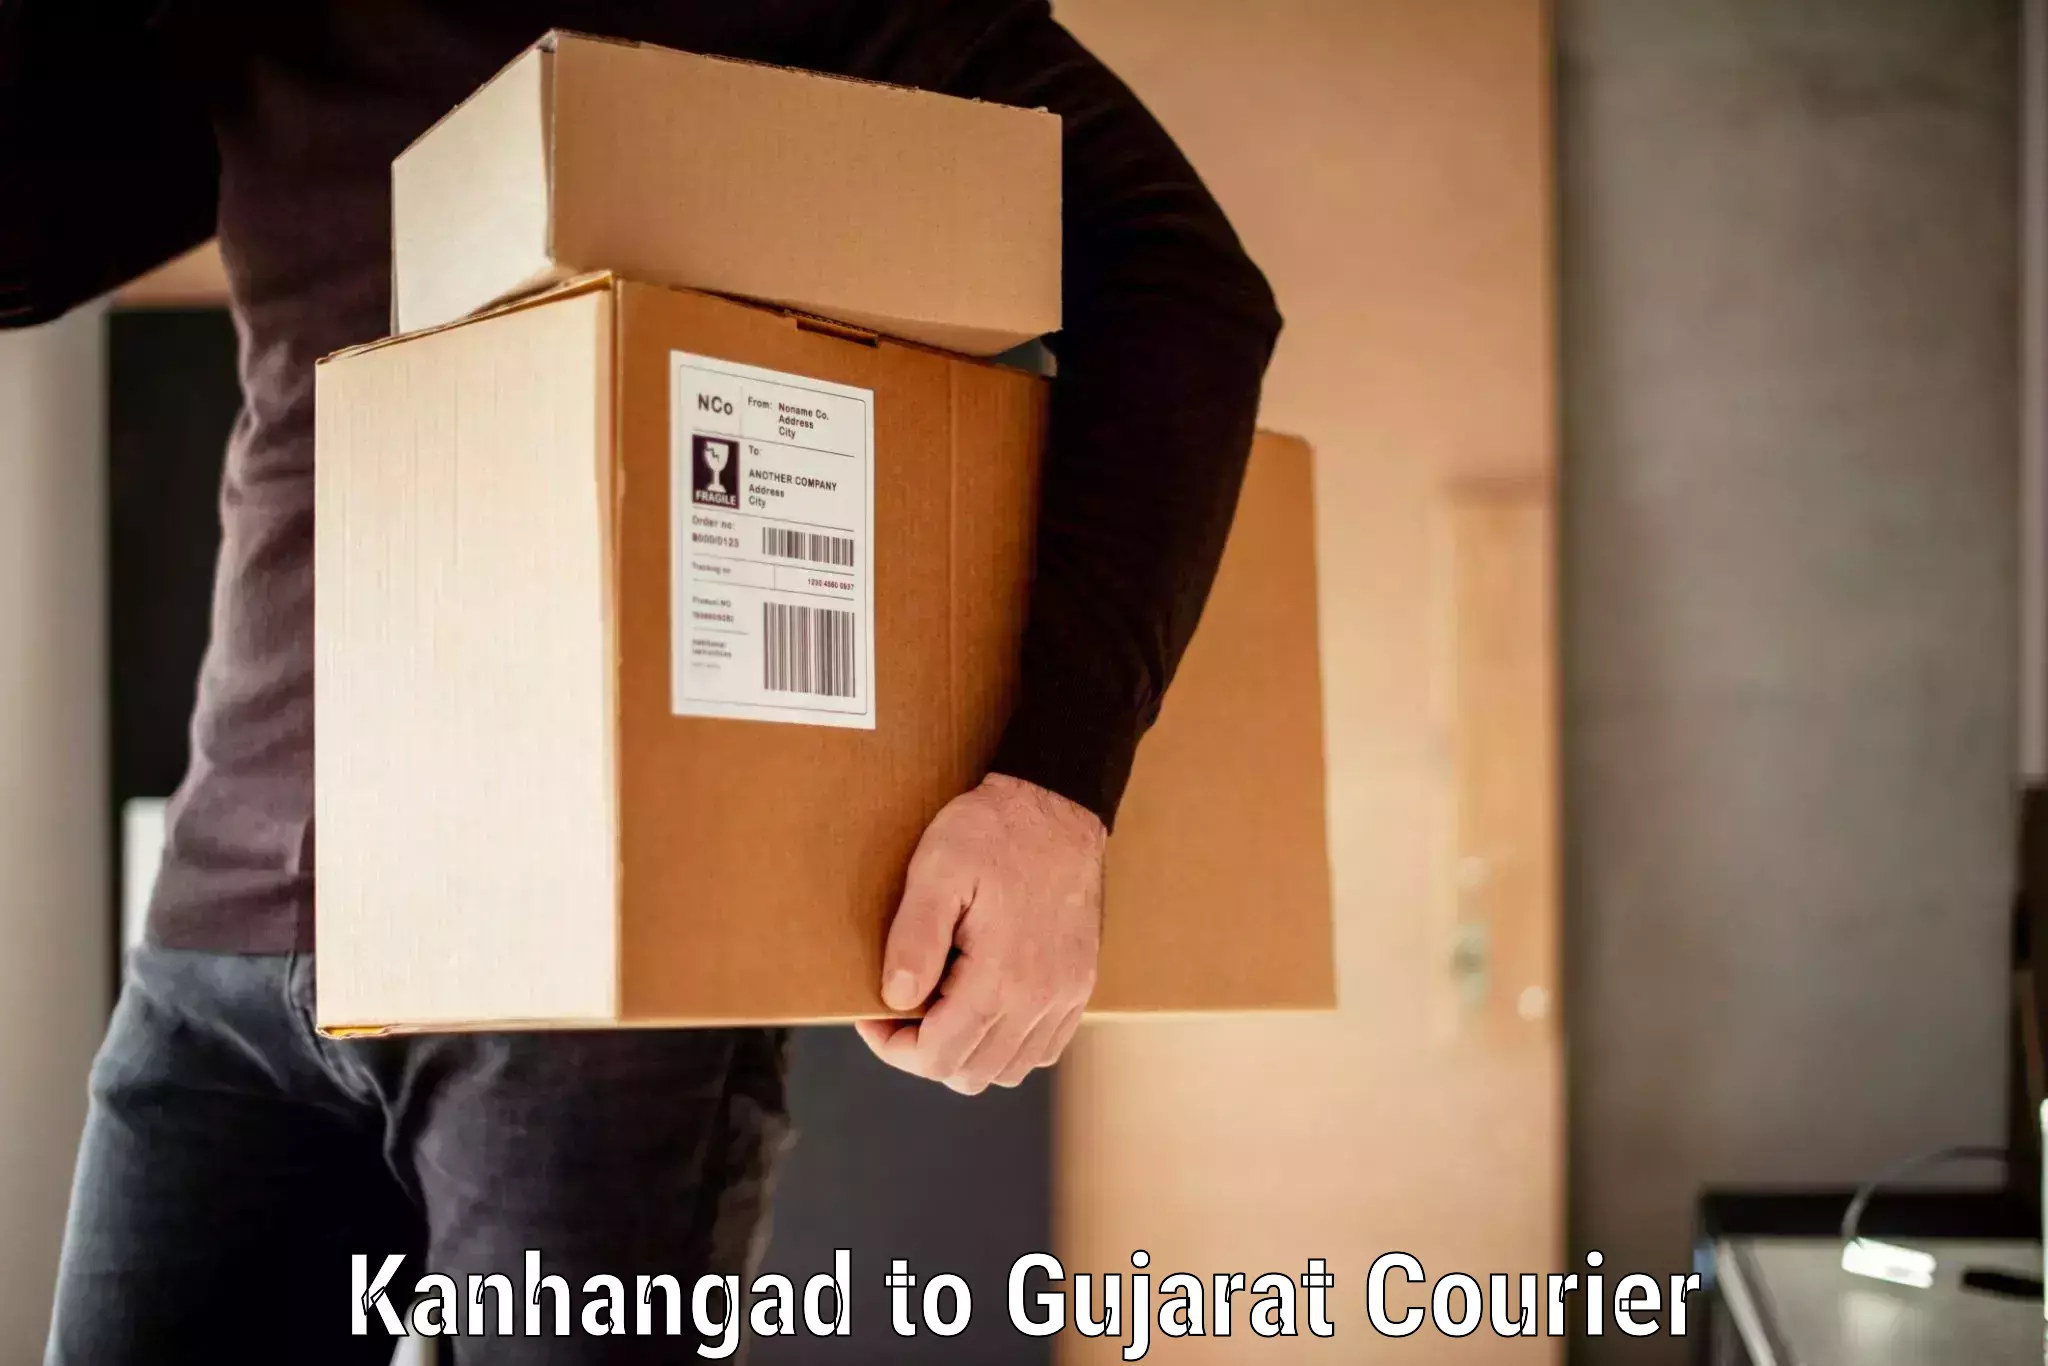 Baggage transport innovation Kanhangad to Dediapada